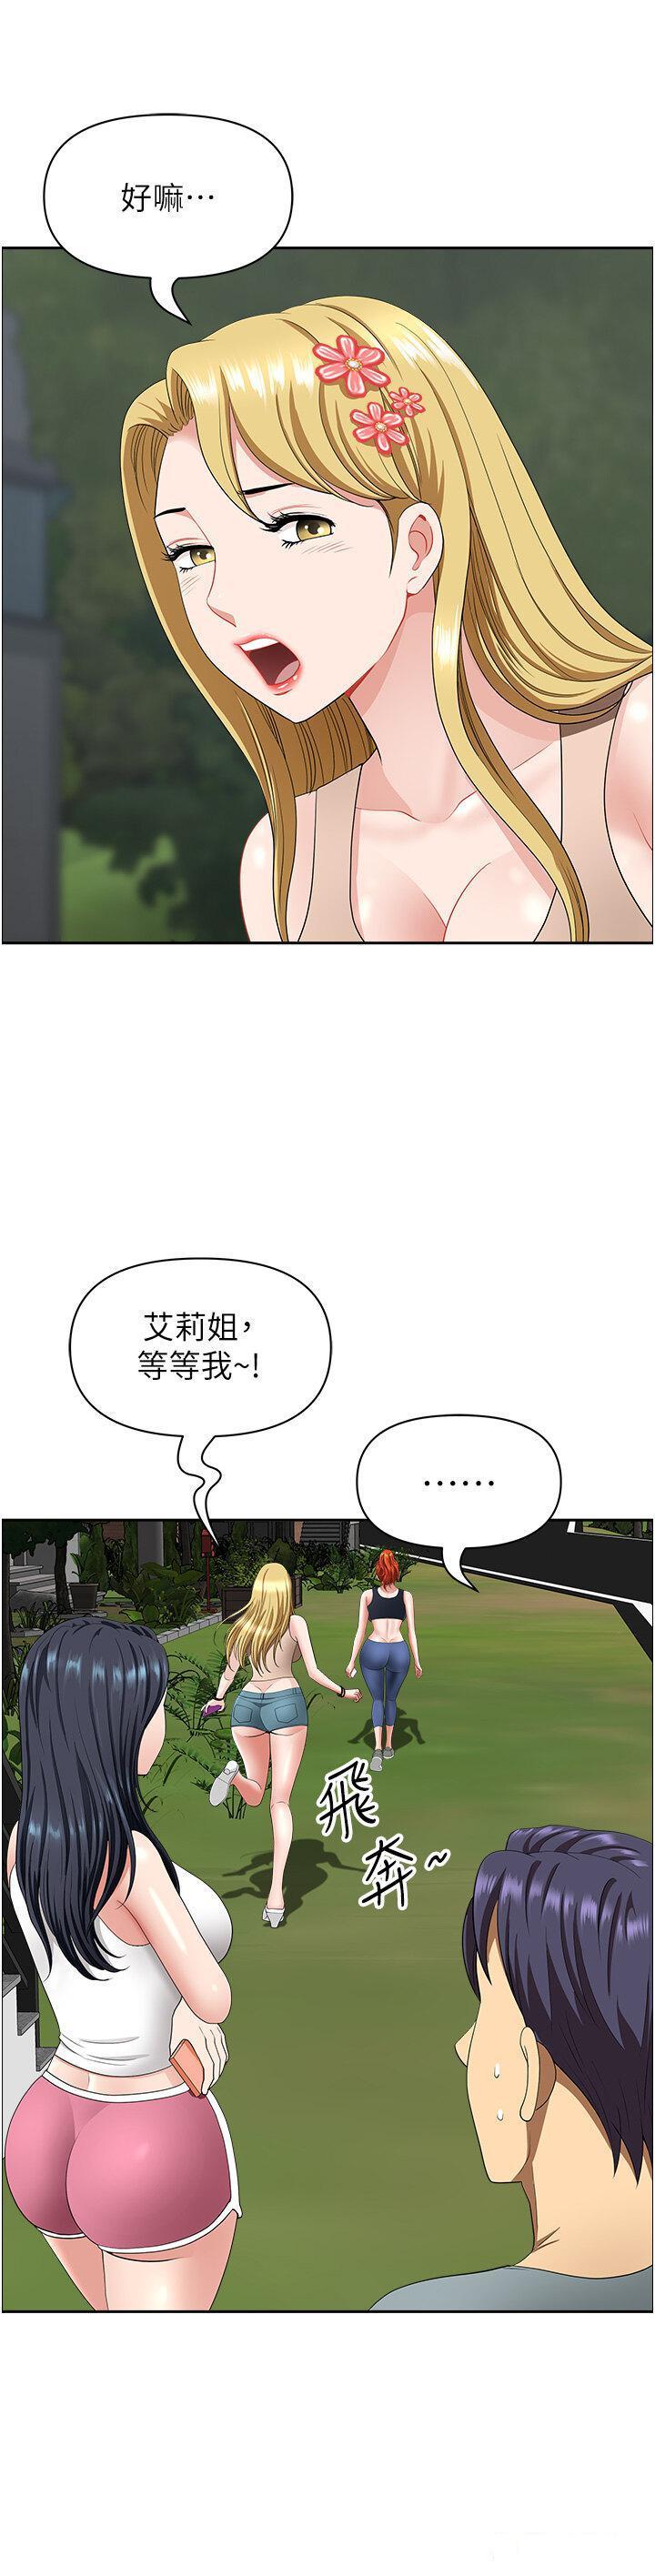 韩国污漫画 地方人妻們 第22话_想被安慰的寂寞人妻 42